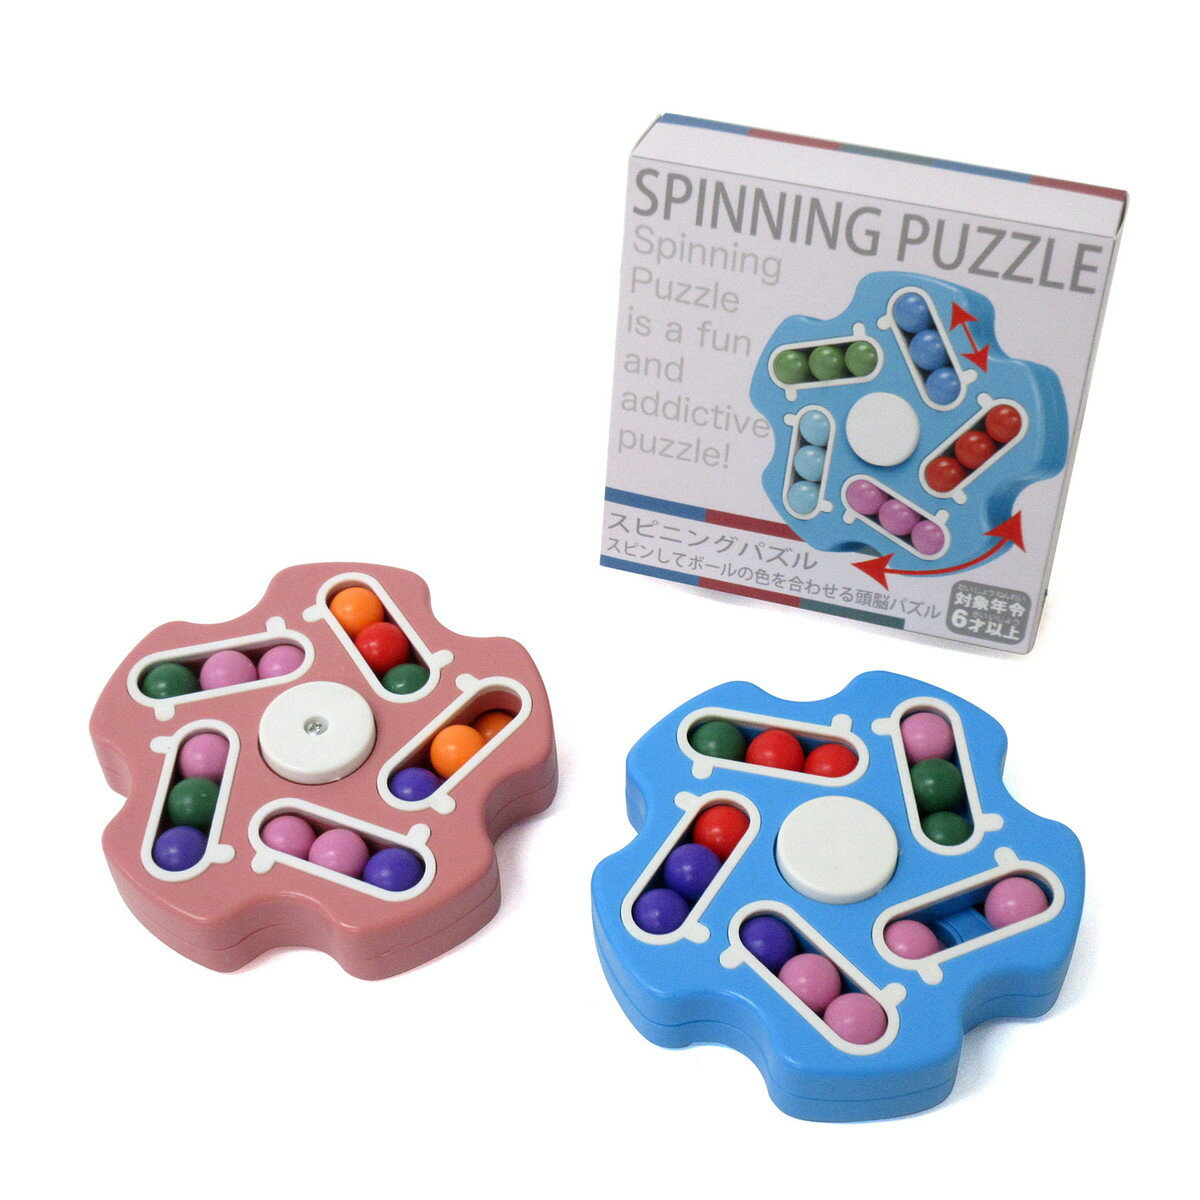 スピニングパズル 選べる2色 知育玩具 誕生日 クリスマス プレゼント ギフト 209-161